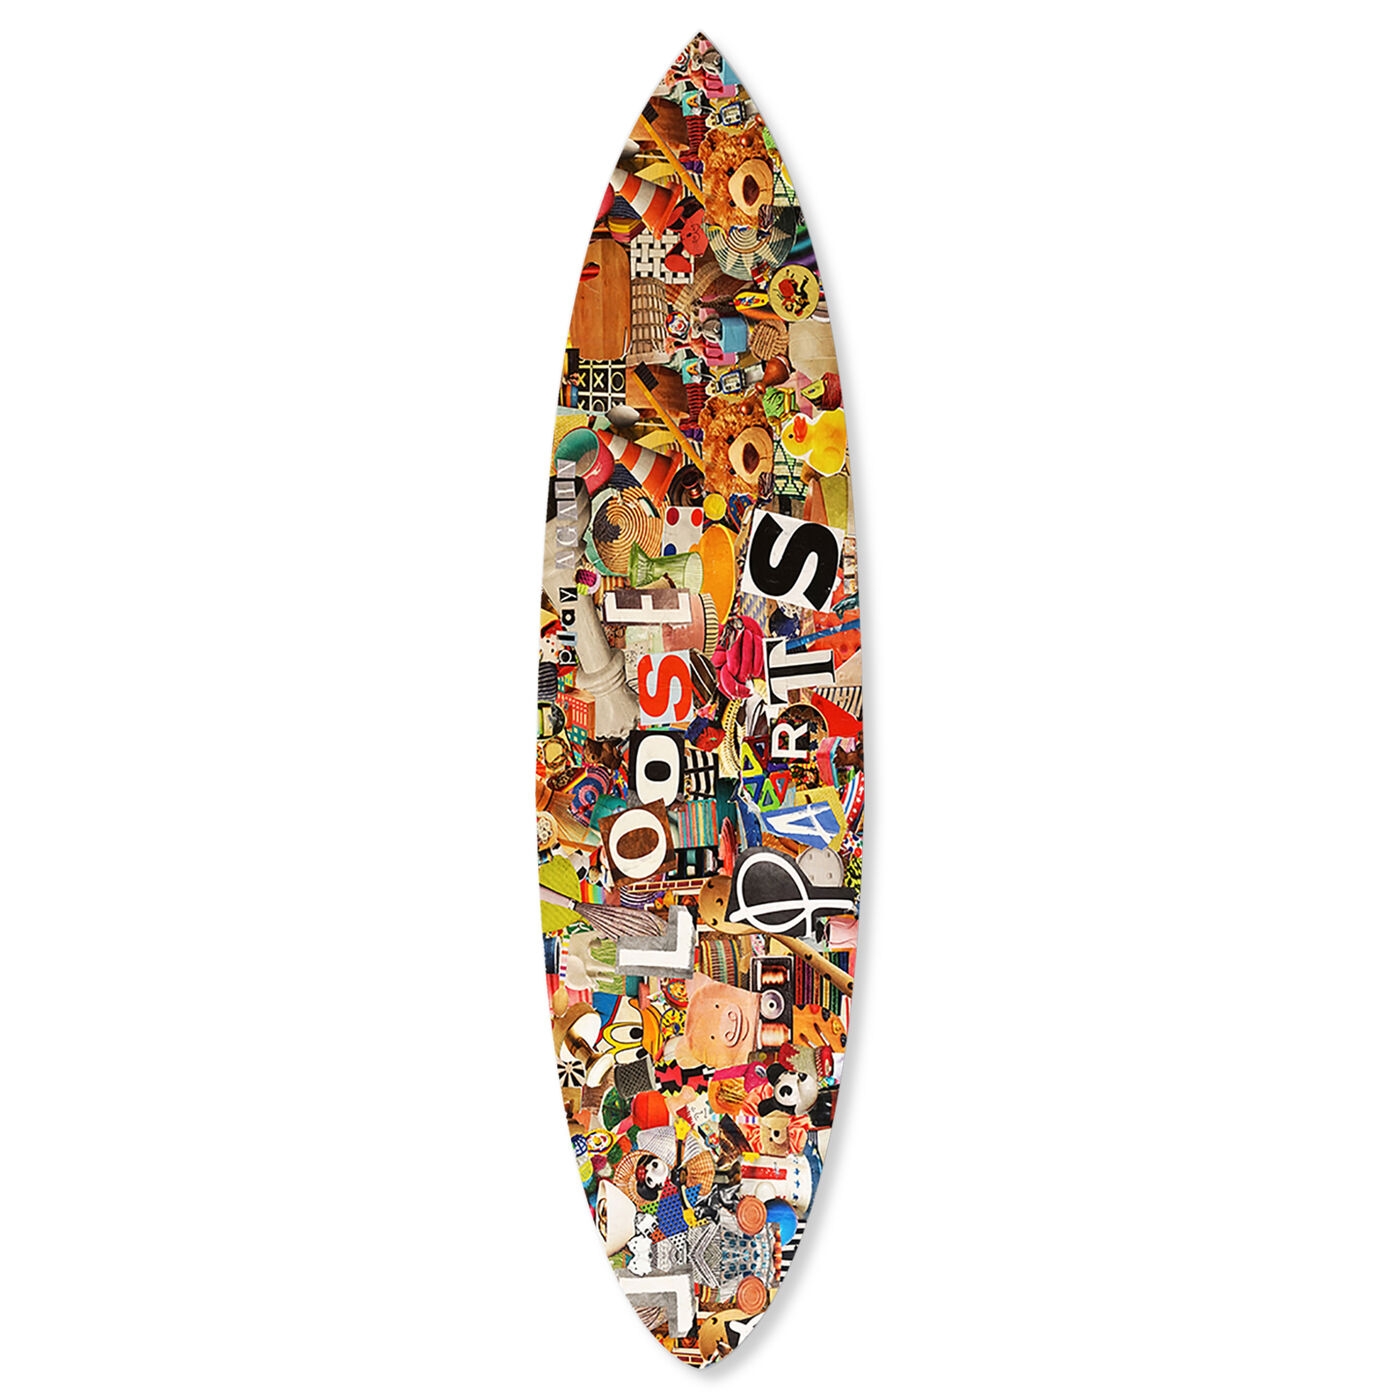 Katy Hirschfeld - Loose Parts Surfboard Flat